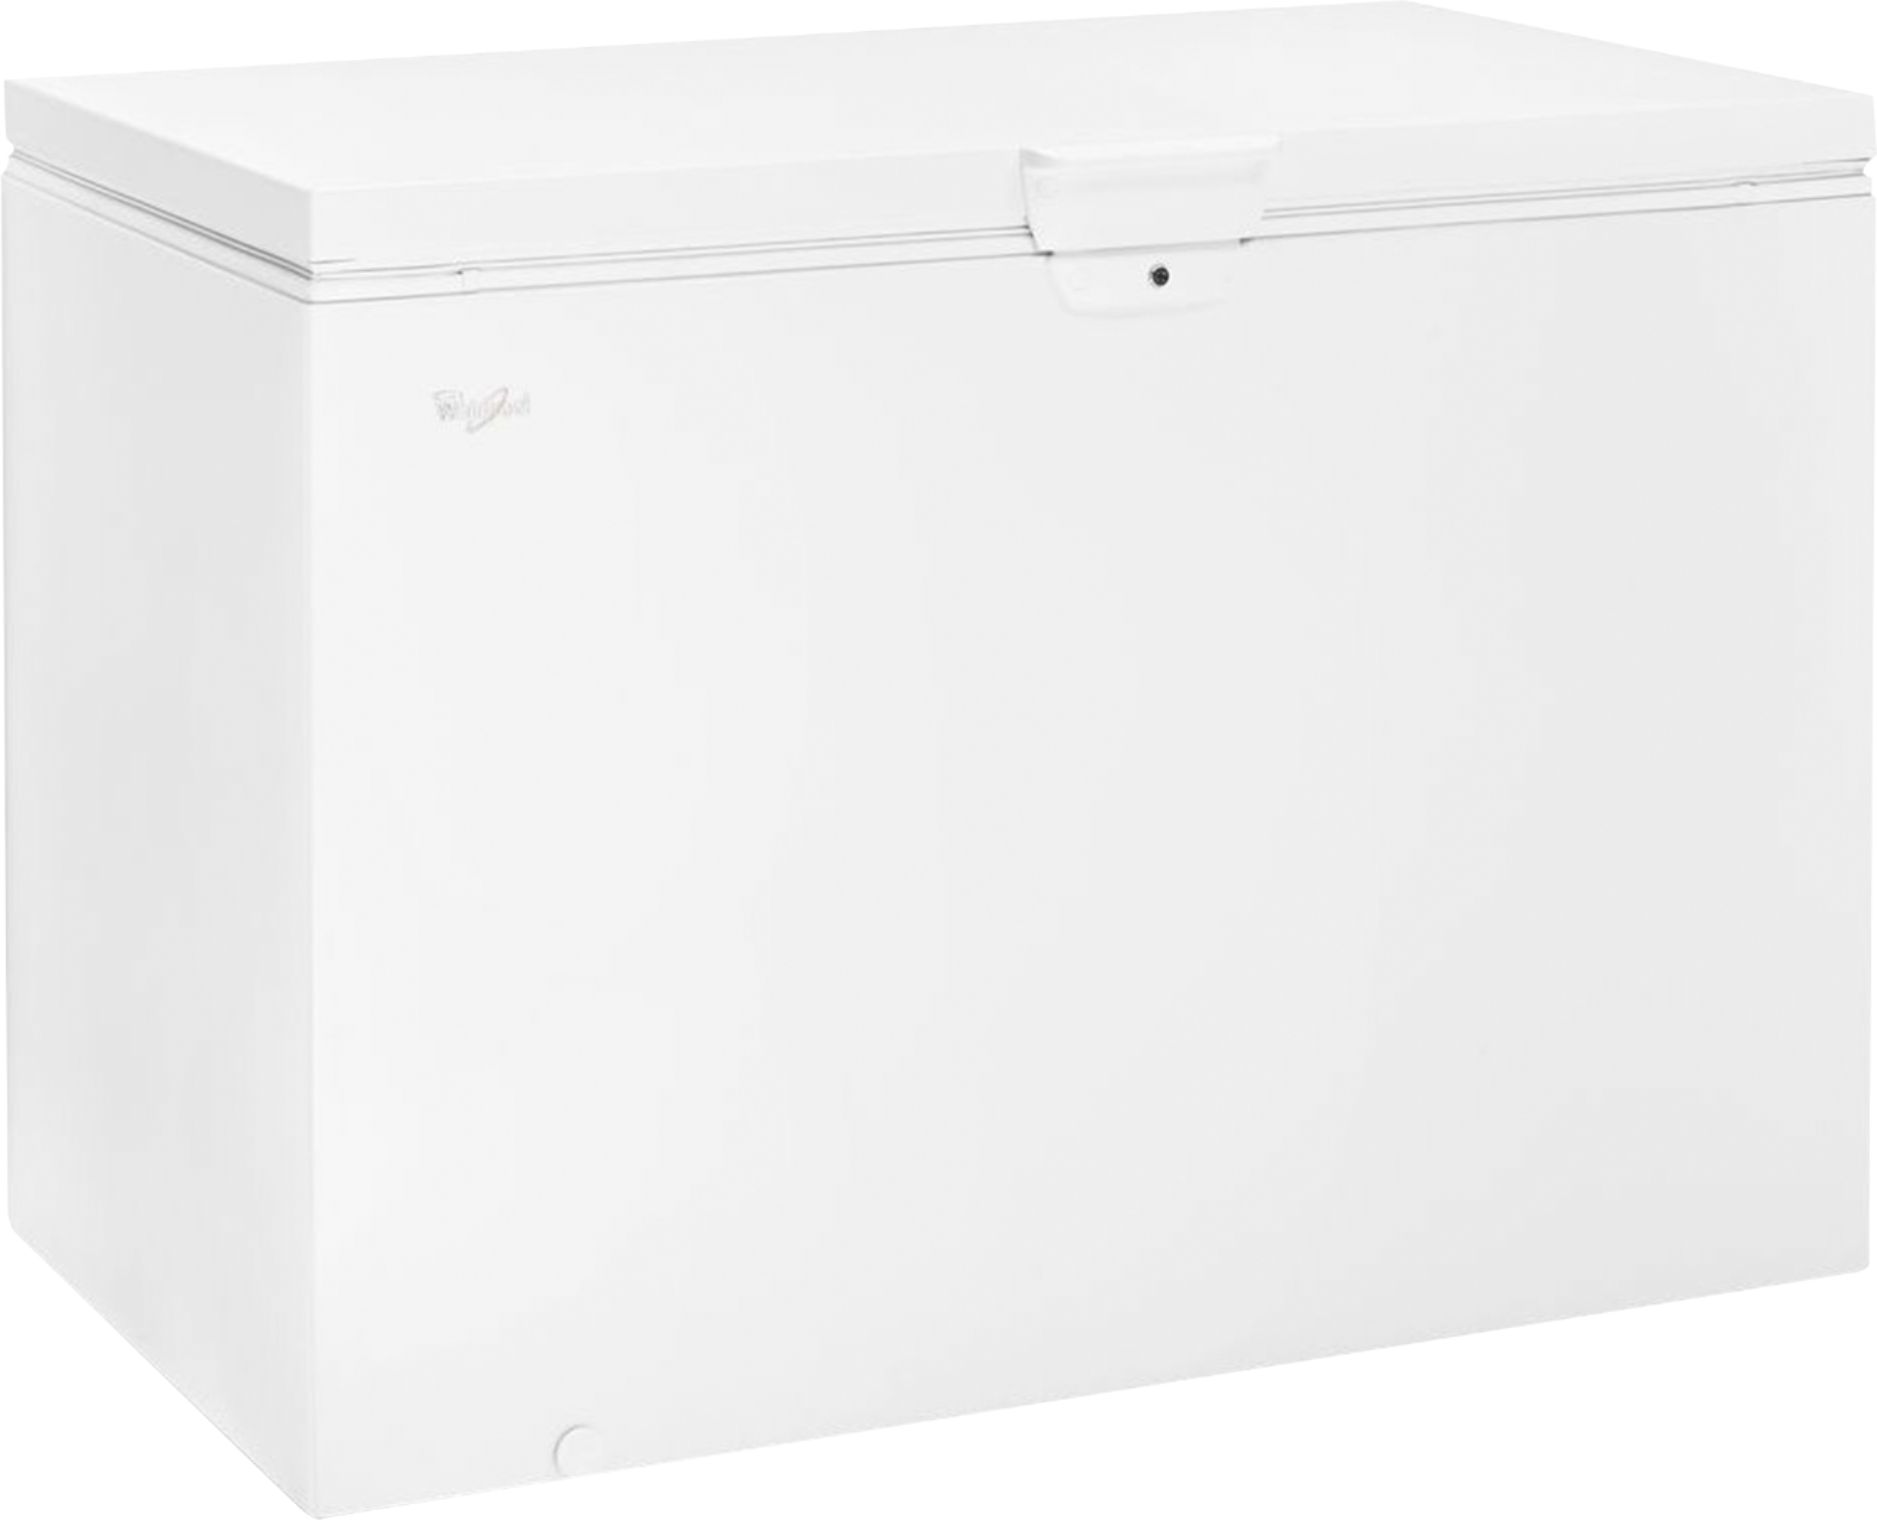 Best Buy: Whirlpool 14.8 Cu. Ft. Chest Freezer White WZC3115DW